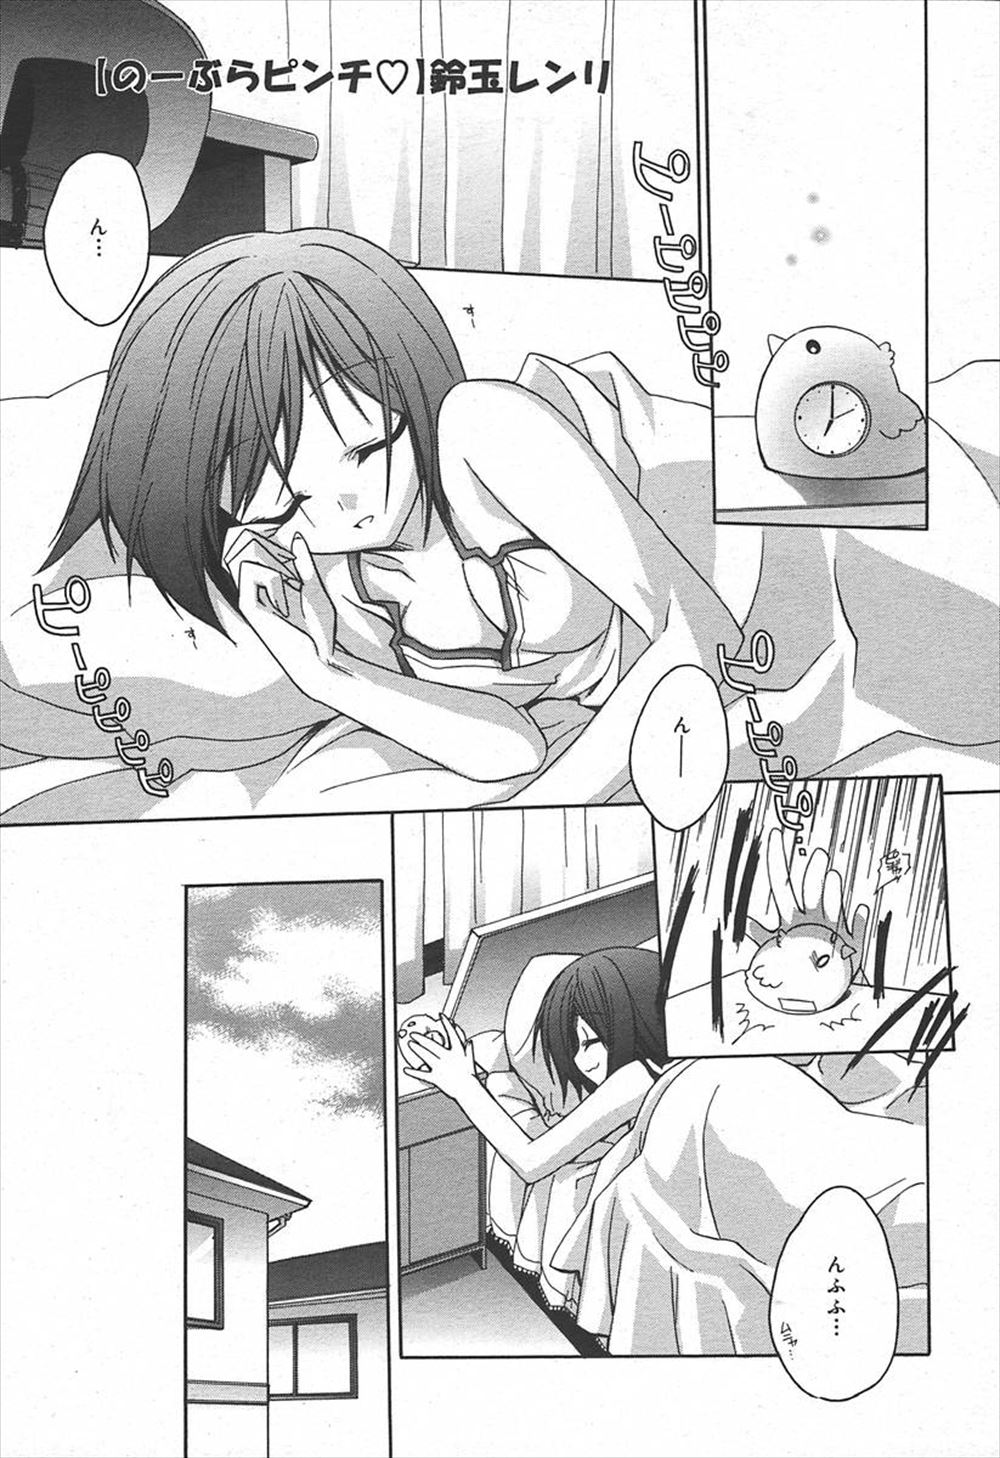 【エロ漫画】寝坊してブラをつけ忘れたJKが彼氏に最速でバレておっぱいを揉まれ、昼休みに校舎裏で激しく犯されたｗ